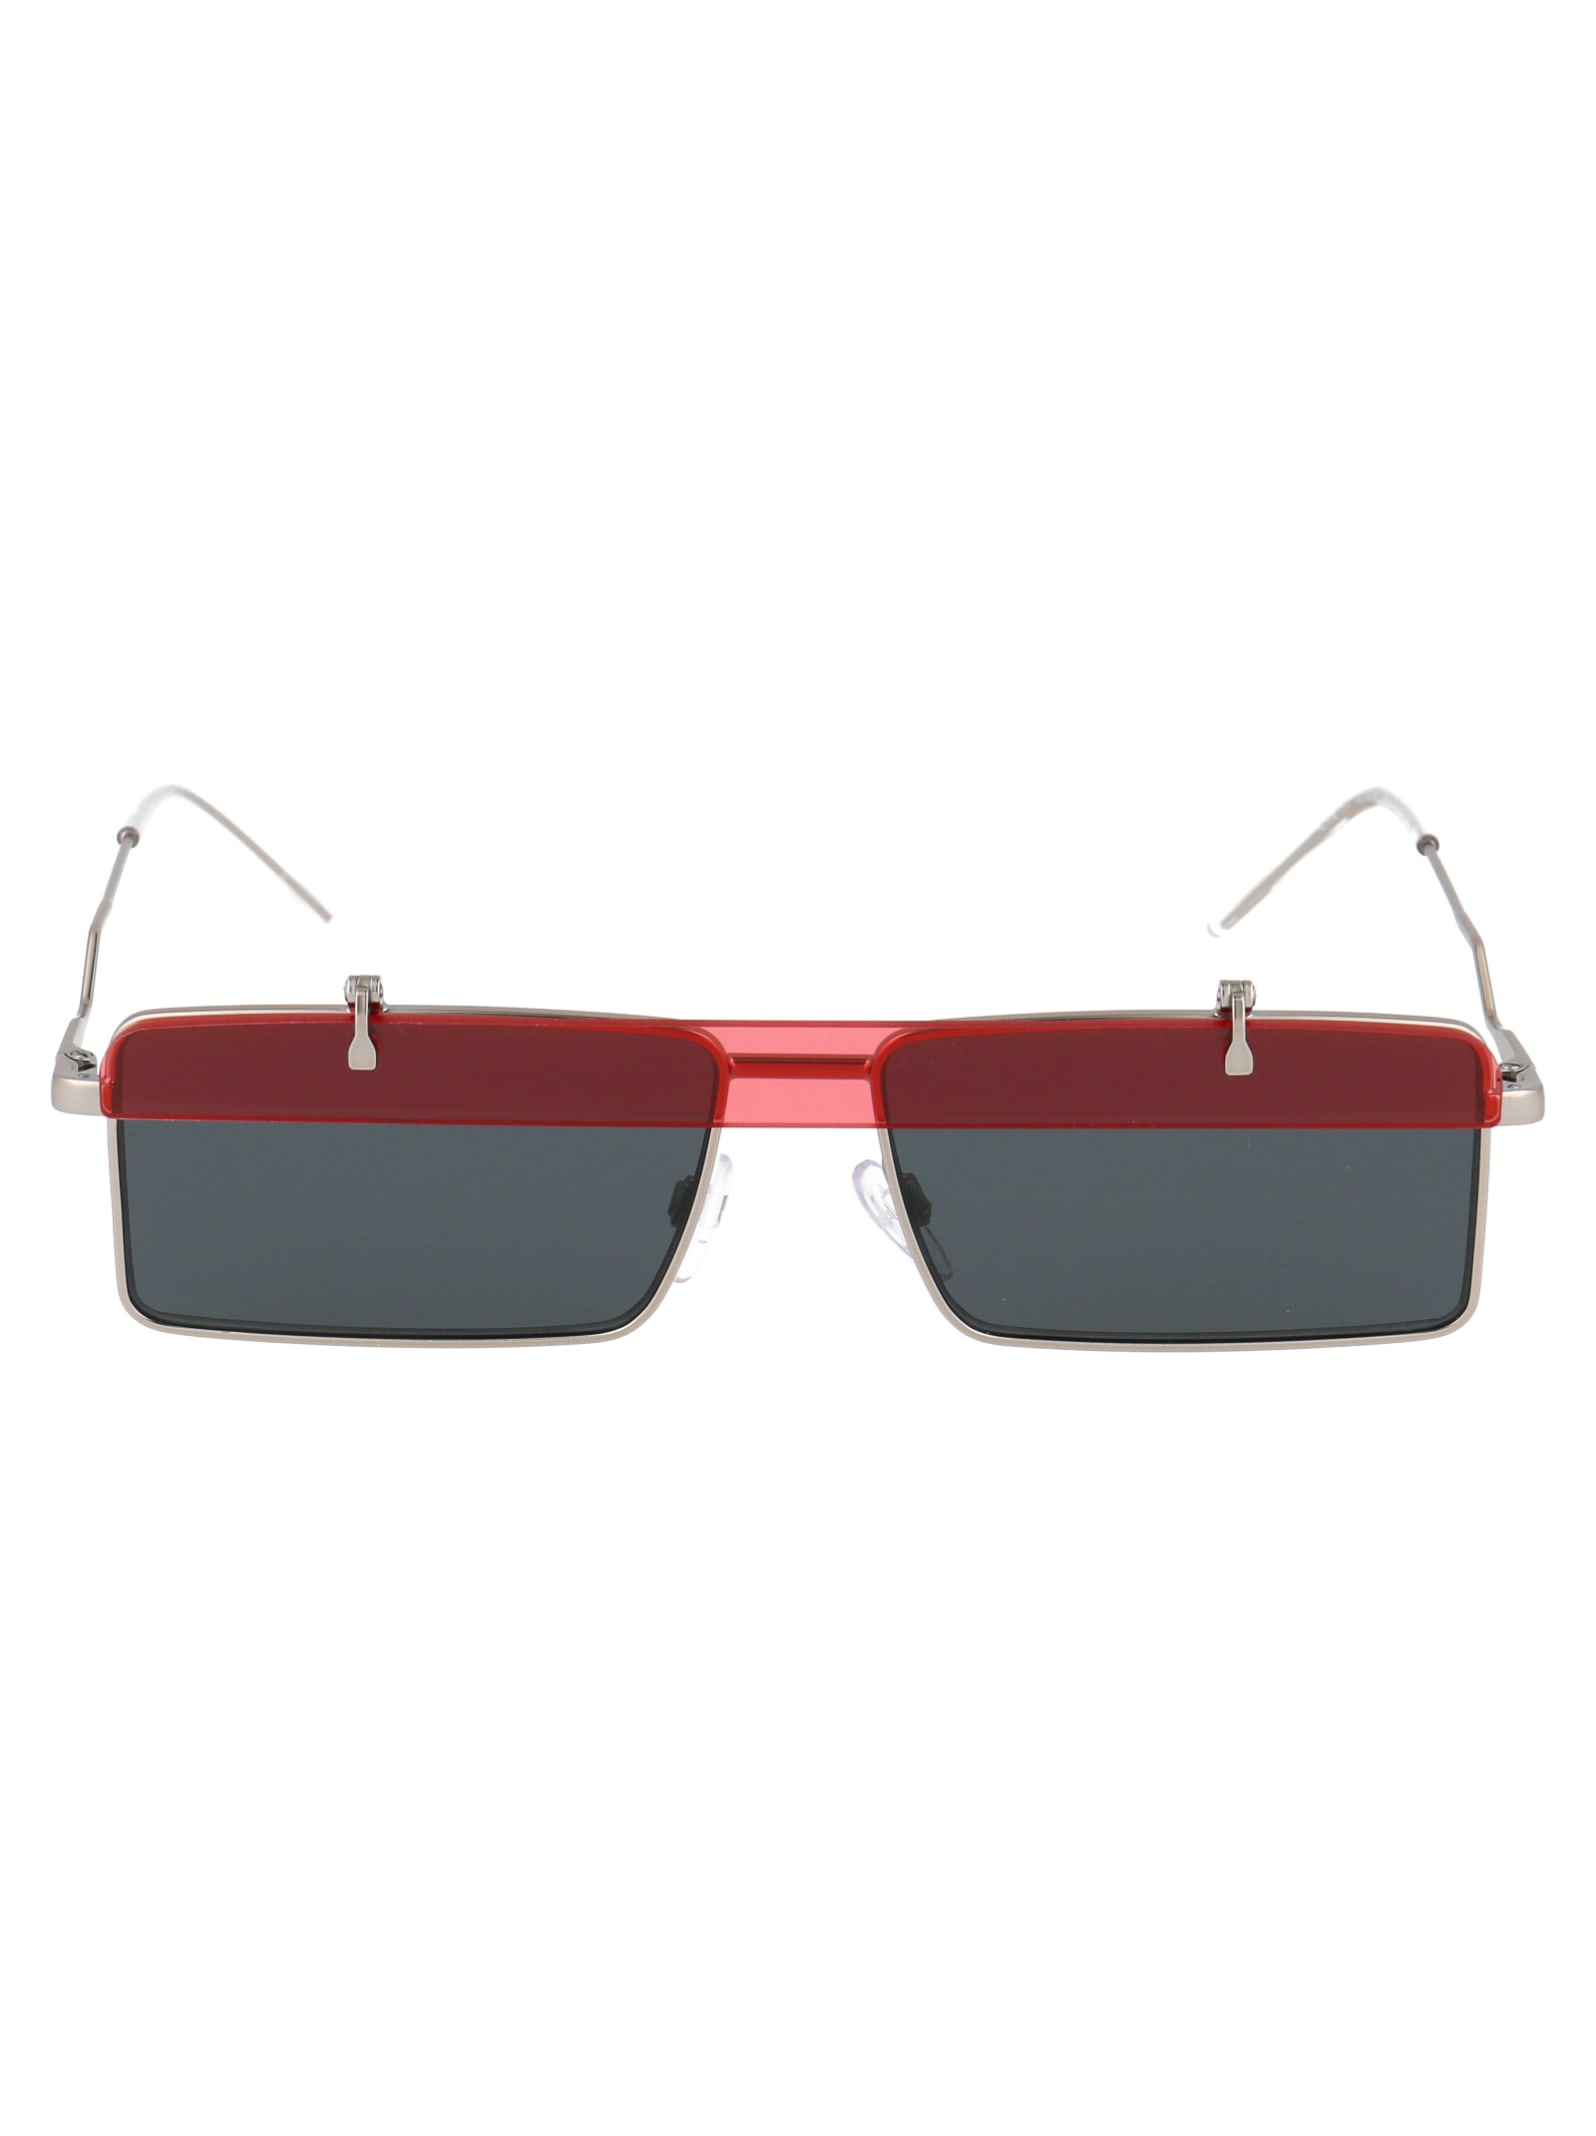 Emporio Armani 0ea2111 Sunglasses